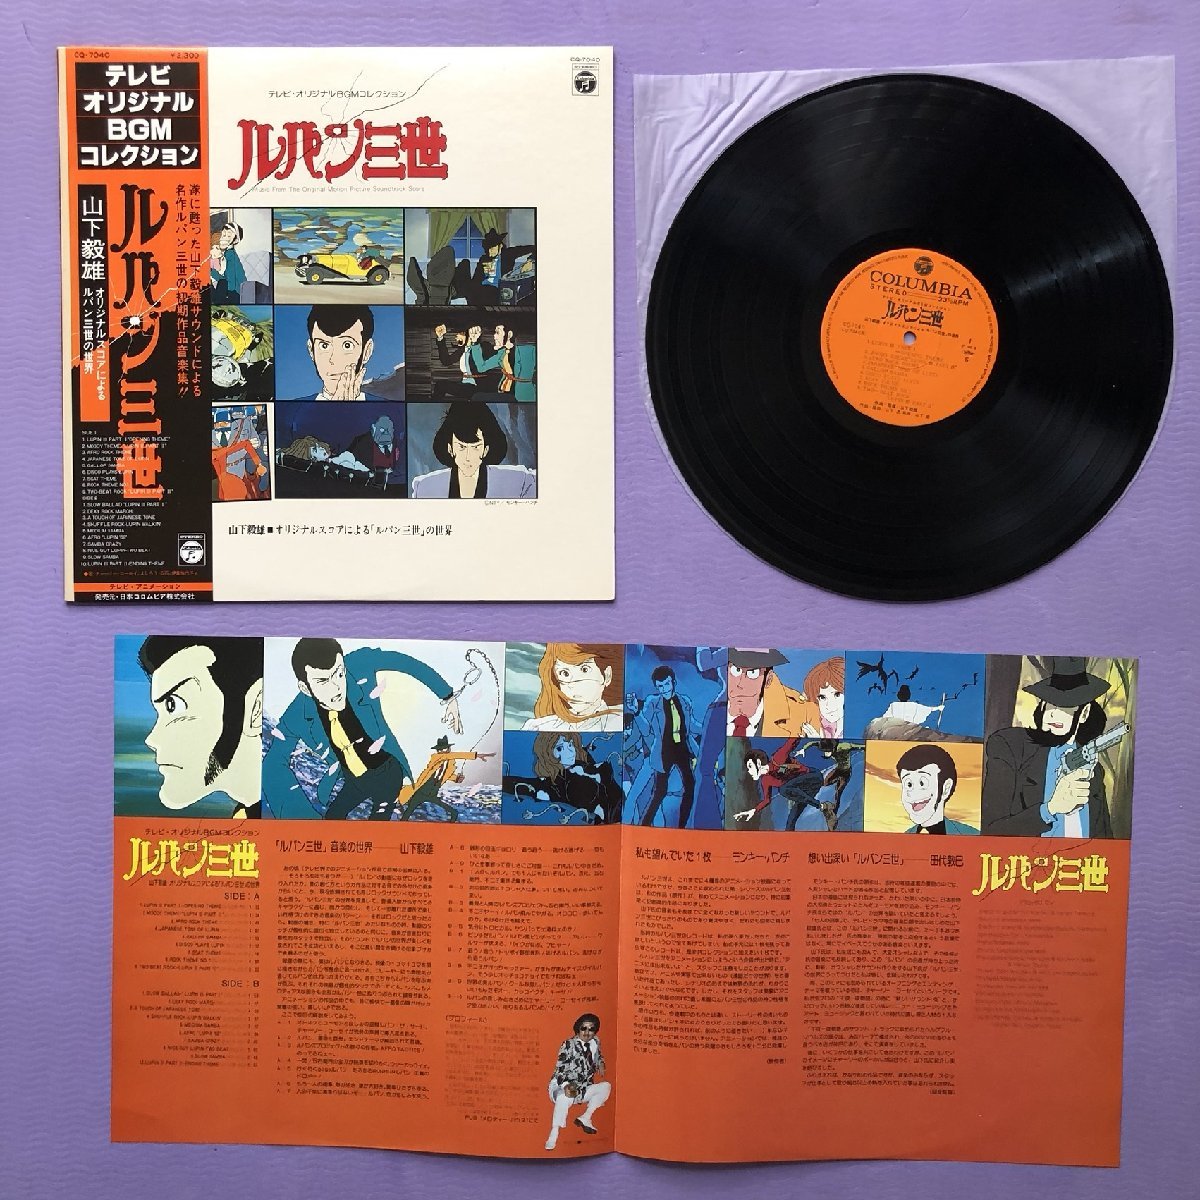 傷なし美盤 良ジャケ 激レア 1979年 ルパン三世 Lupin the Third LPレコード テレビ・オリジナルBGMコレクション Lupin III 帯付_画像5